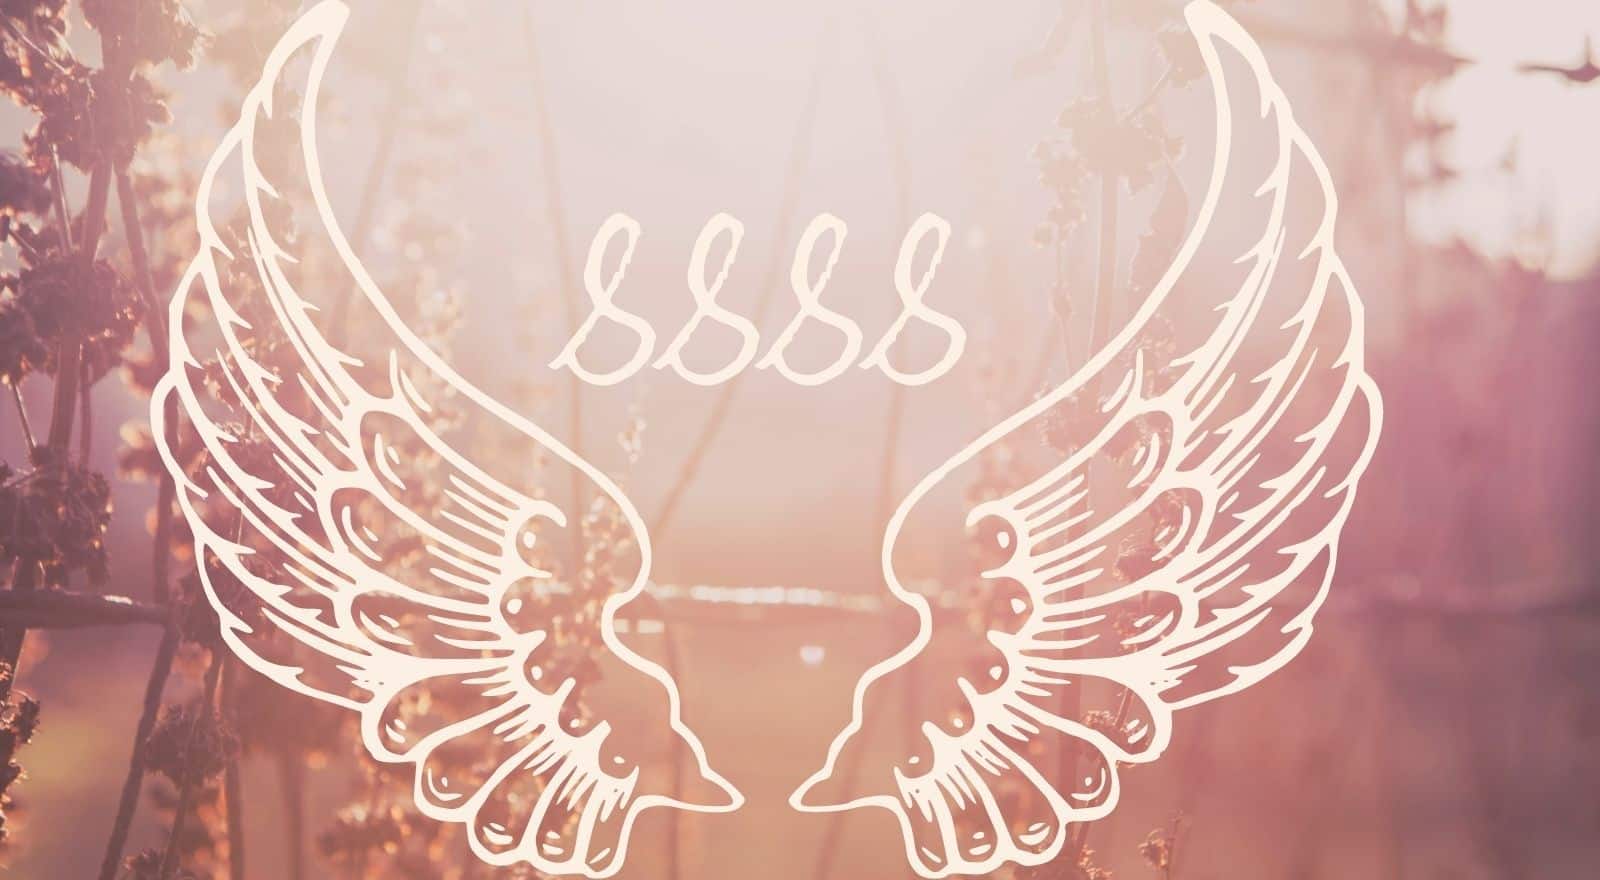 Engelennummer 8888 Betekenis – Een positieve boodschap van welvaart